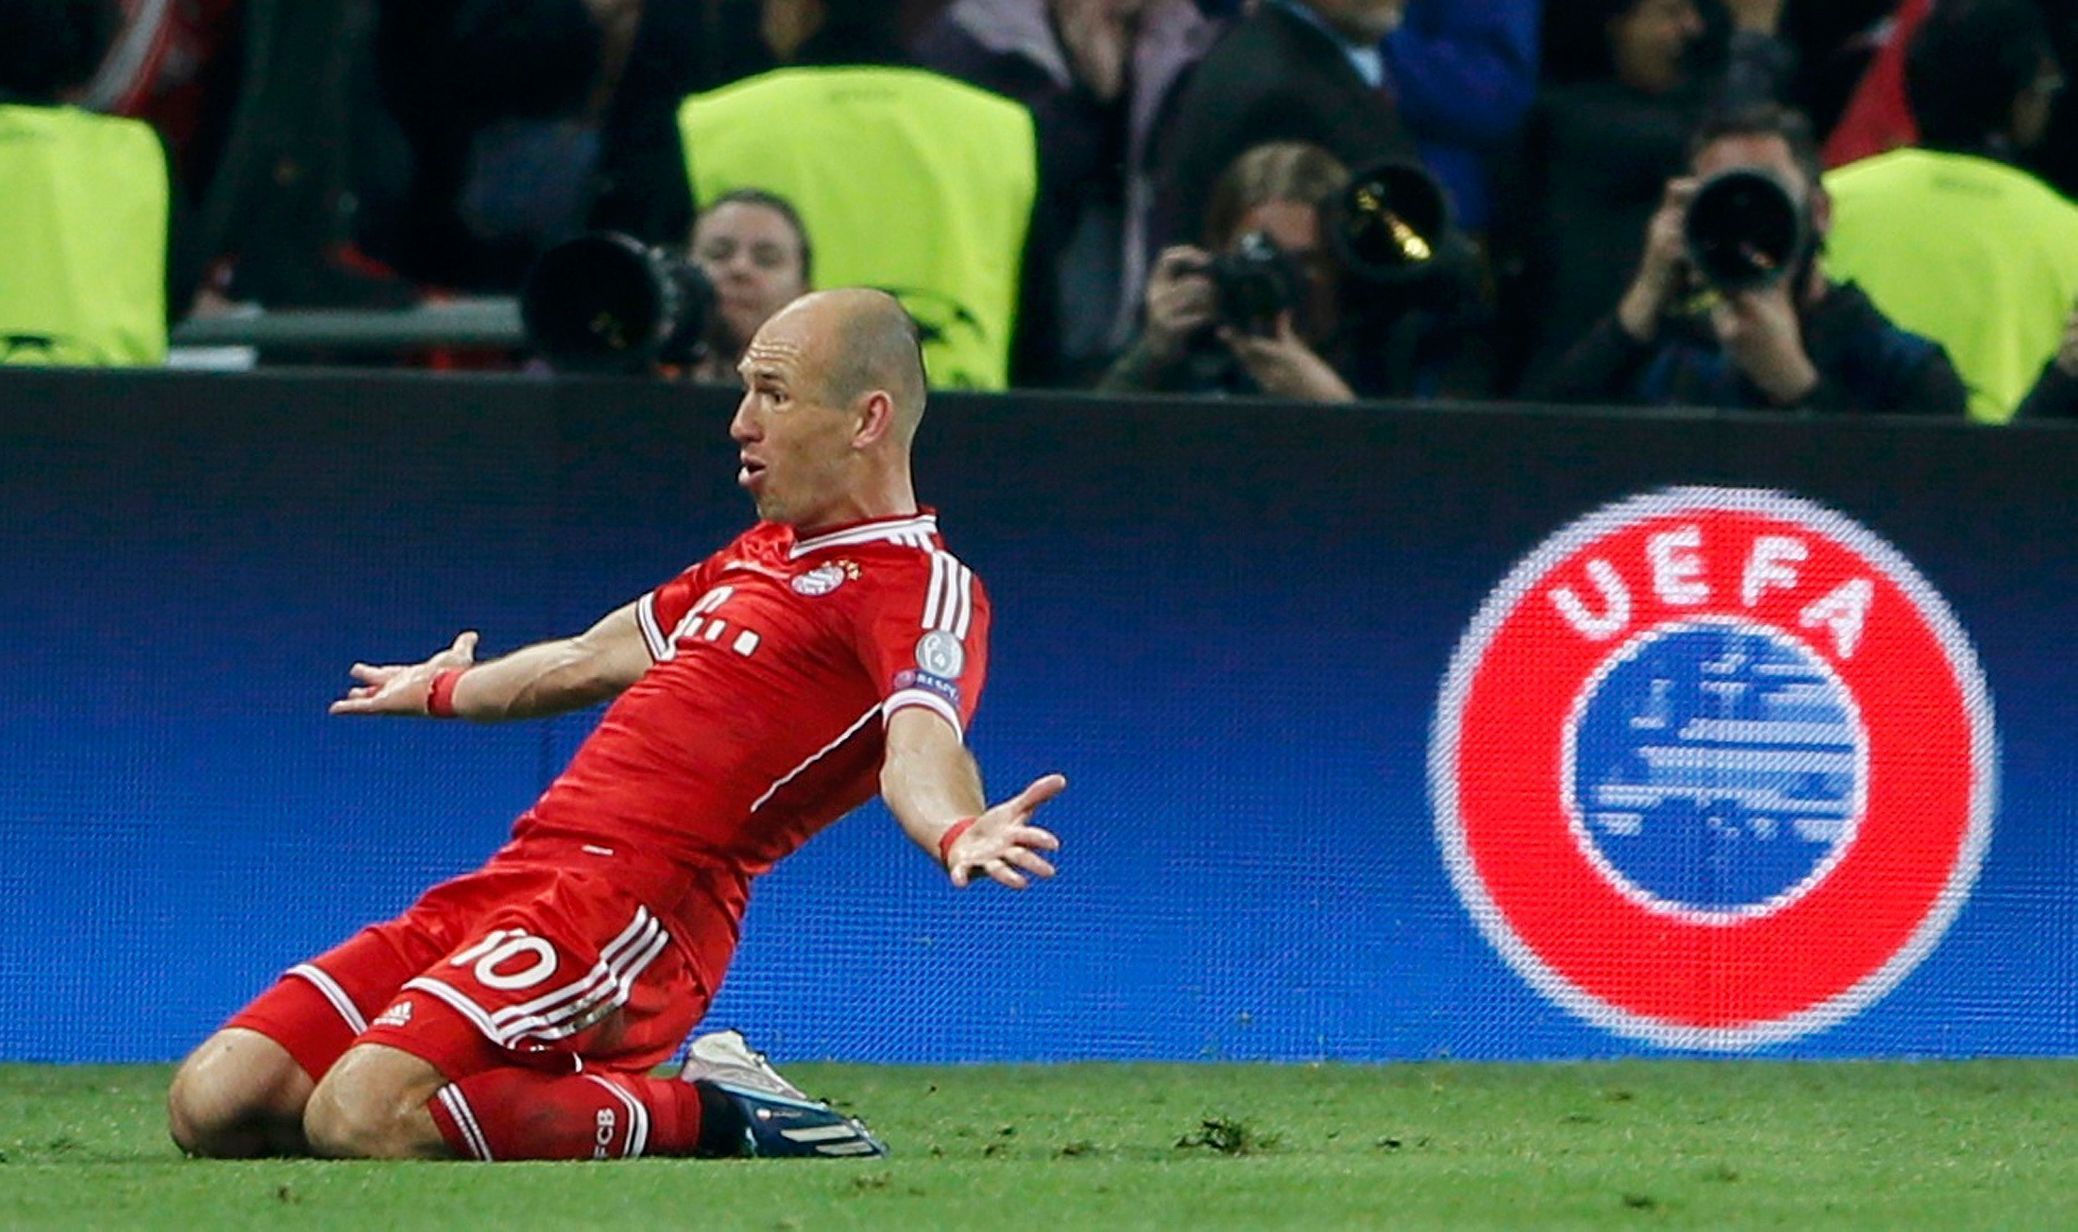 Fotbal, Liga mistrů, Bayern - Dortmund: Arjen Robben slaví gól na 2:1